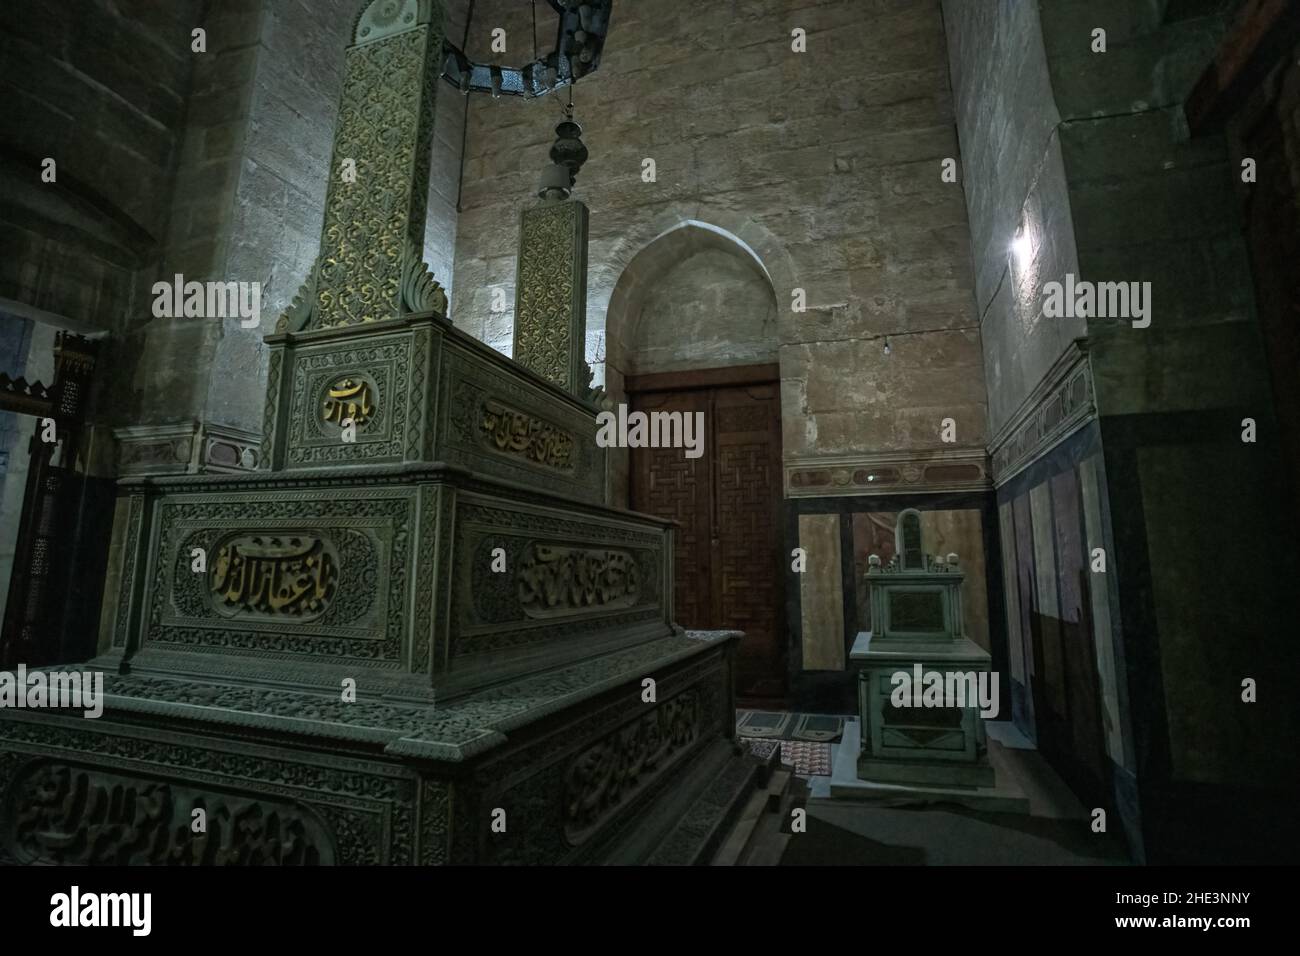 Das prunkvolle Grab von Sultan Hussein Kamel und das kleinere Grab von Sultana Melek in der Al Rifai Moschee im historischen Kairo, Ägypten. Stockfoto